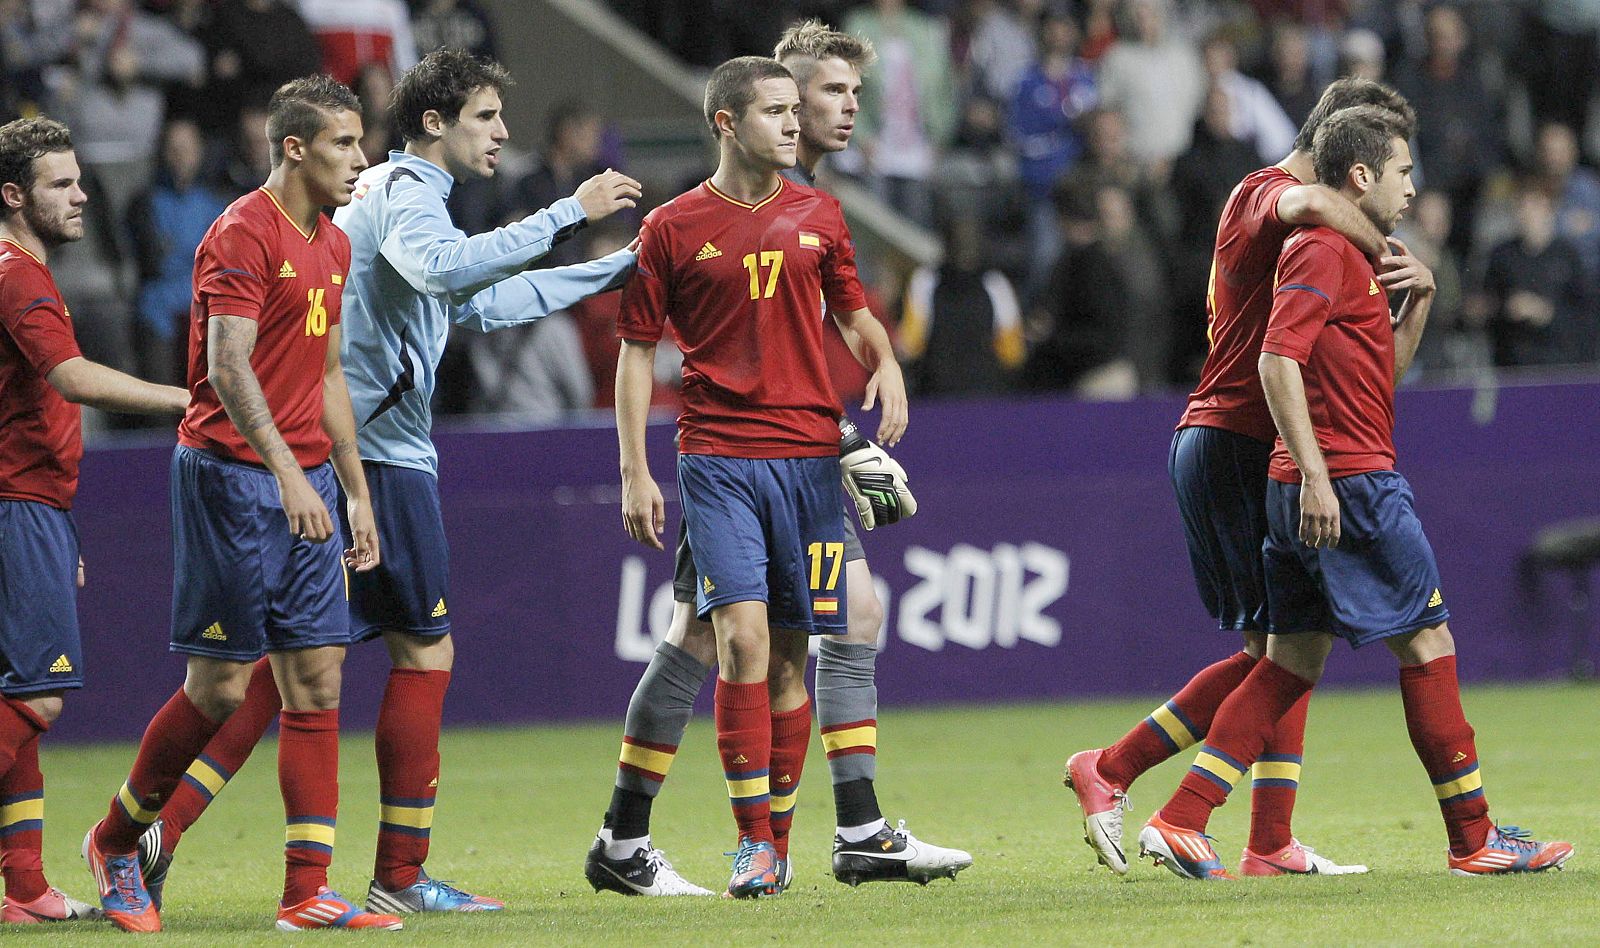 Los jugadores de la selección española tras su derrota ante Honduras durante el partido de primera fase del torneo de fútbol de los Juegos de Londres 2012